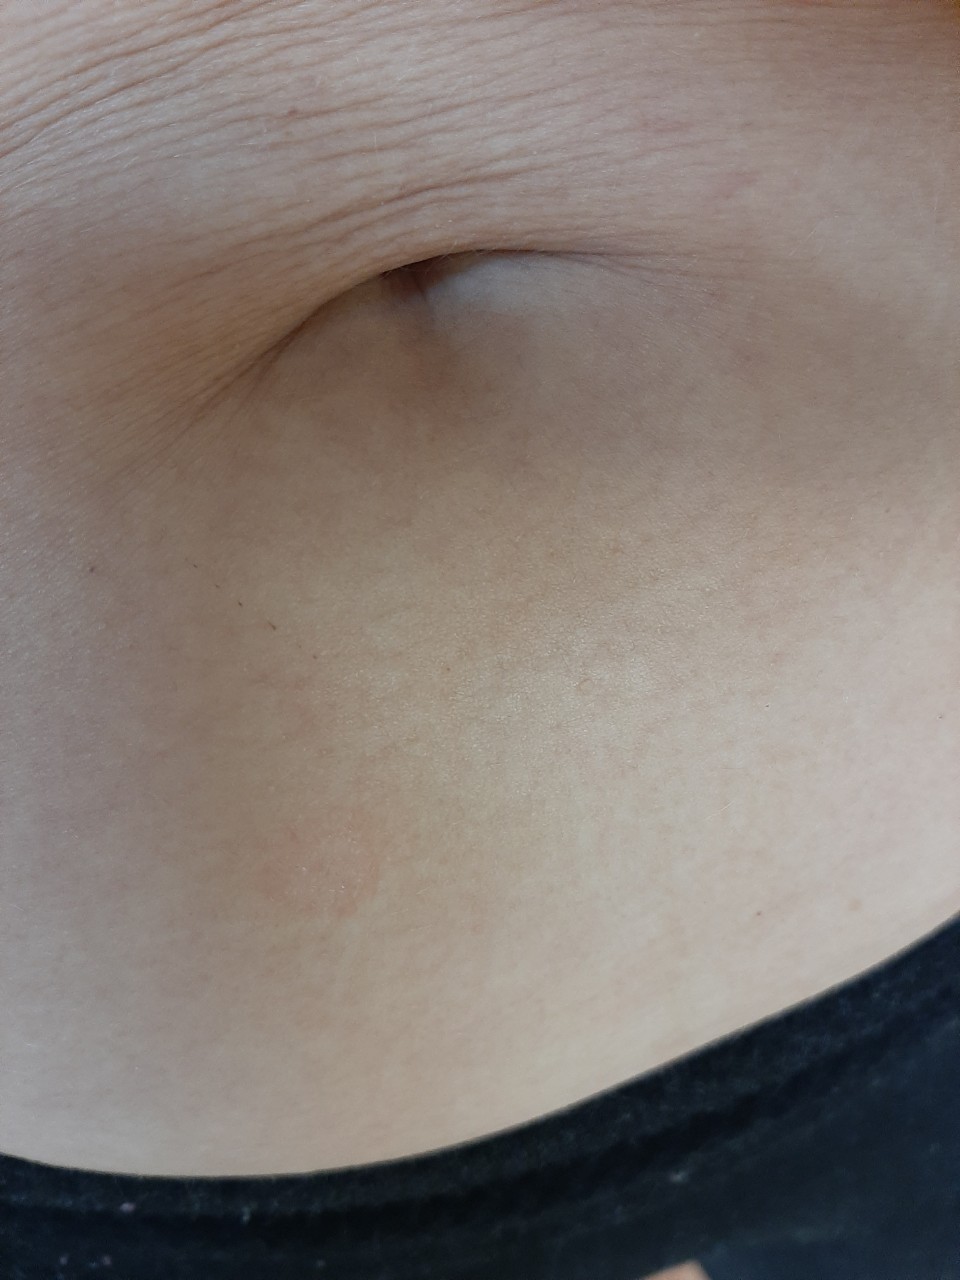 шелушится кожа на груди во время беременности фото 81